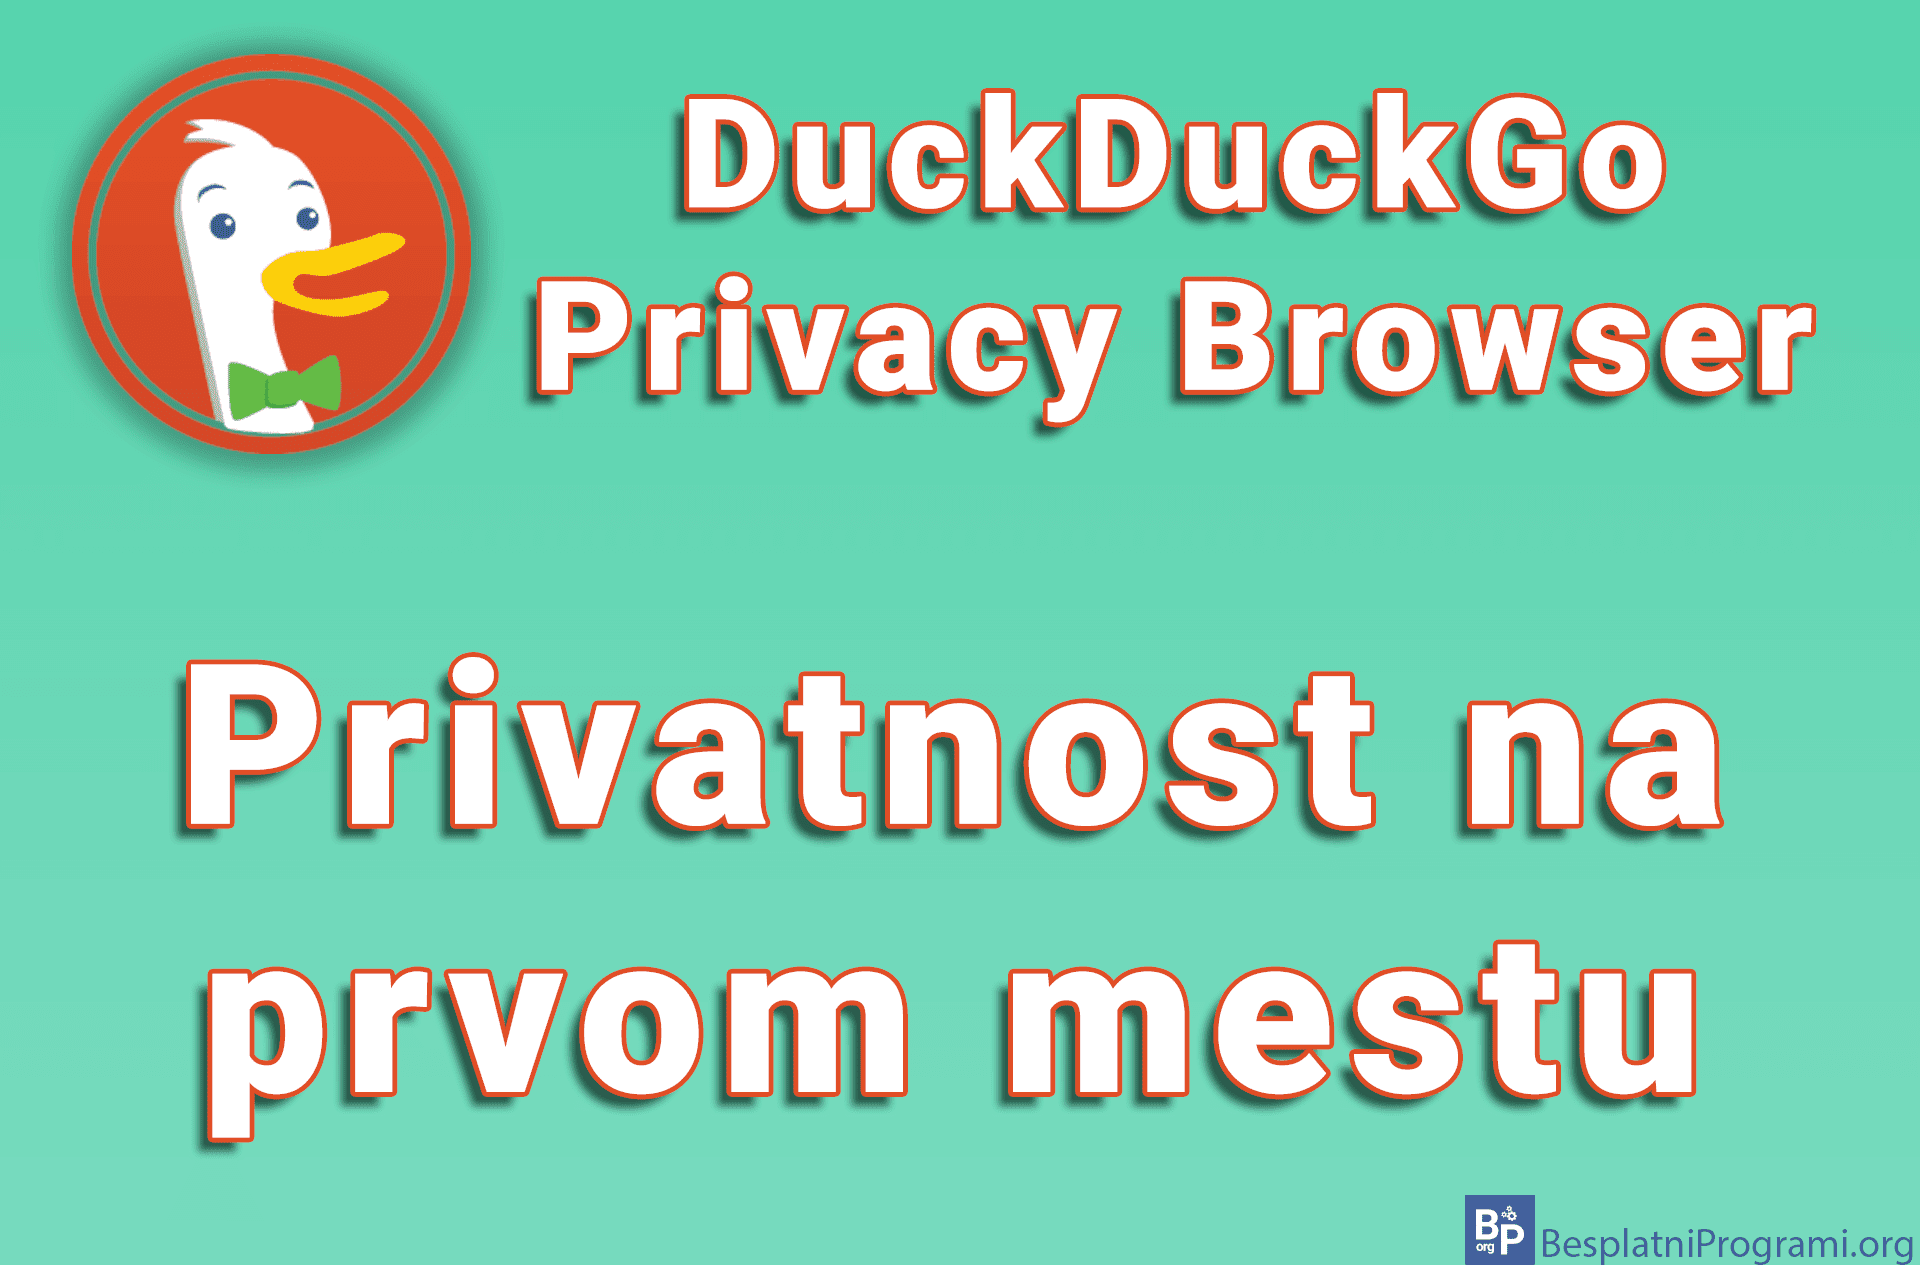 DuckDuckGo Privacy Browser – Privatnost na prvom mestu